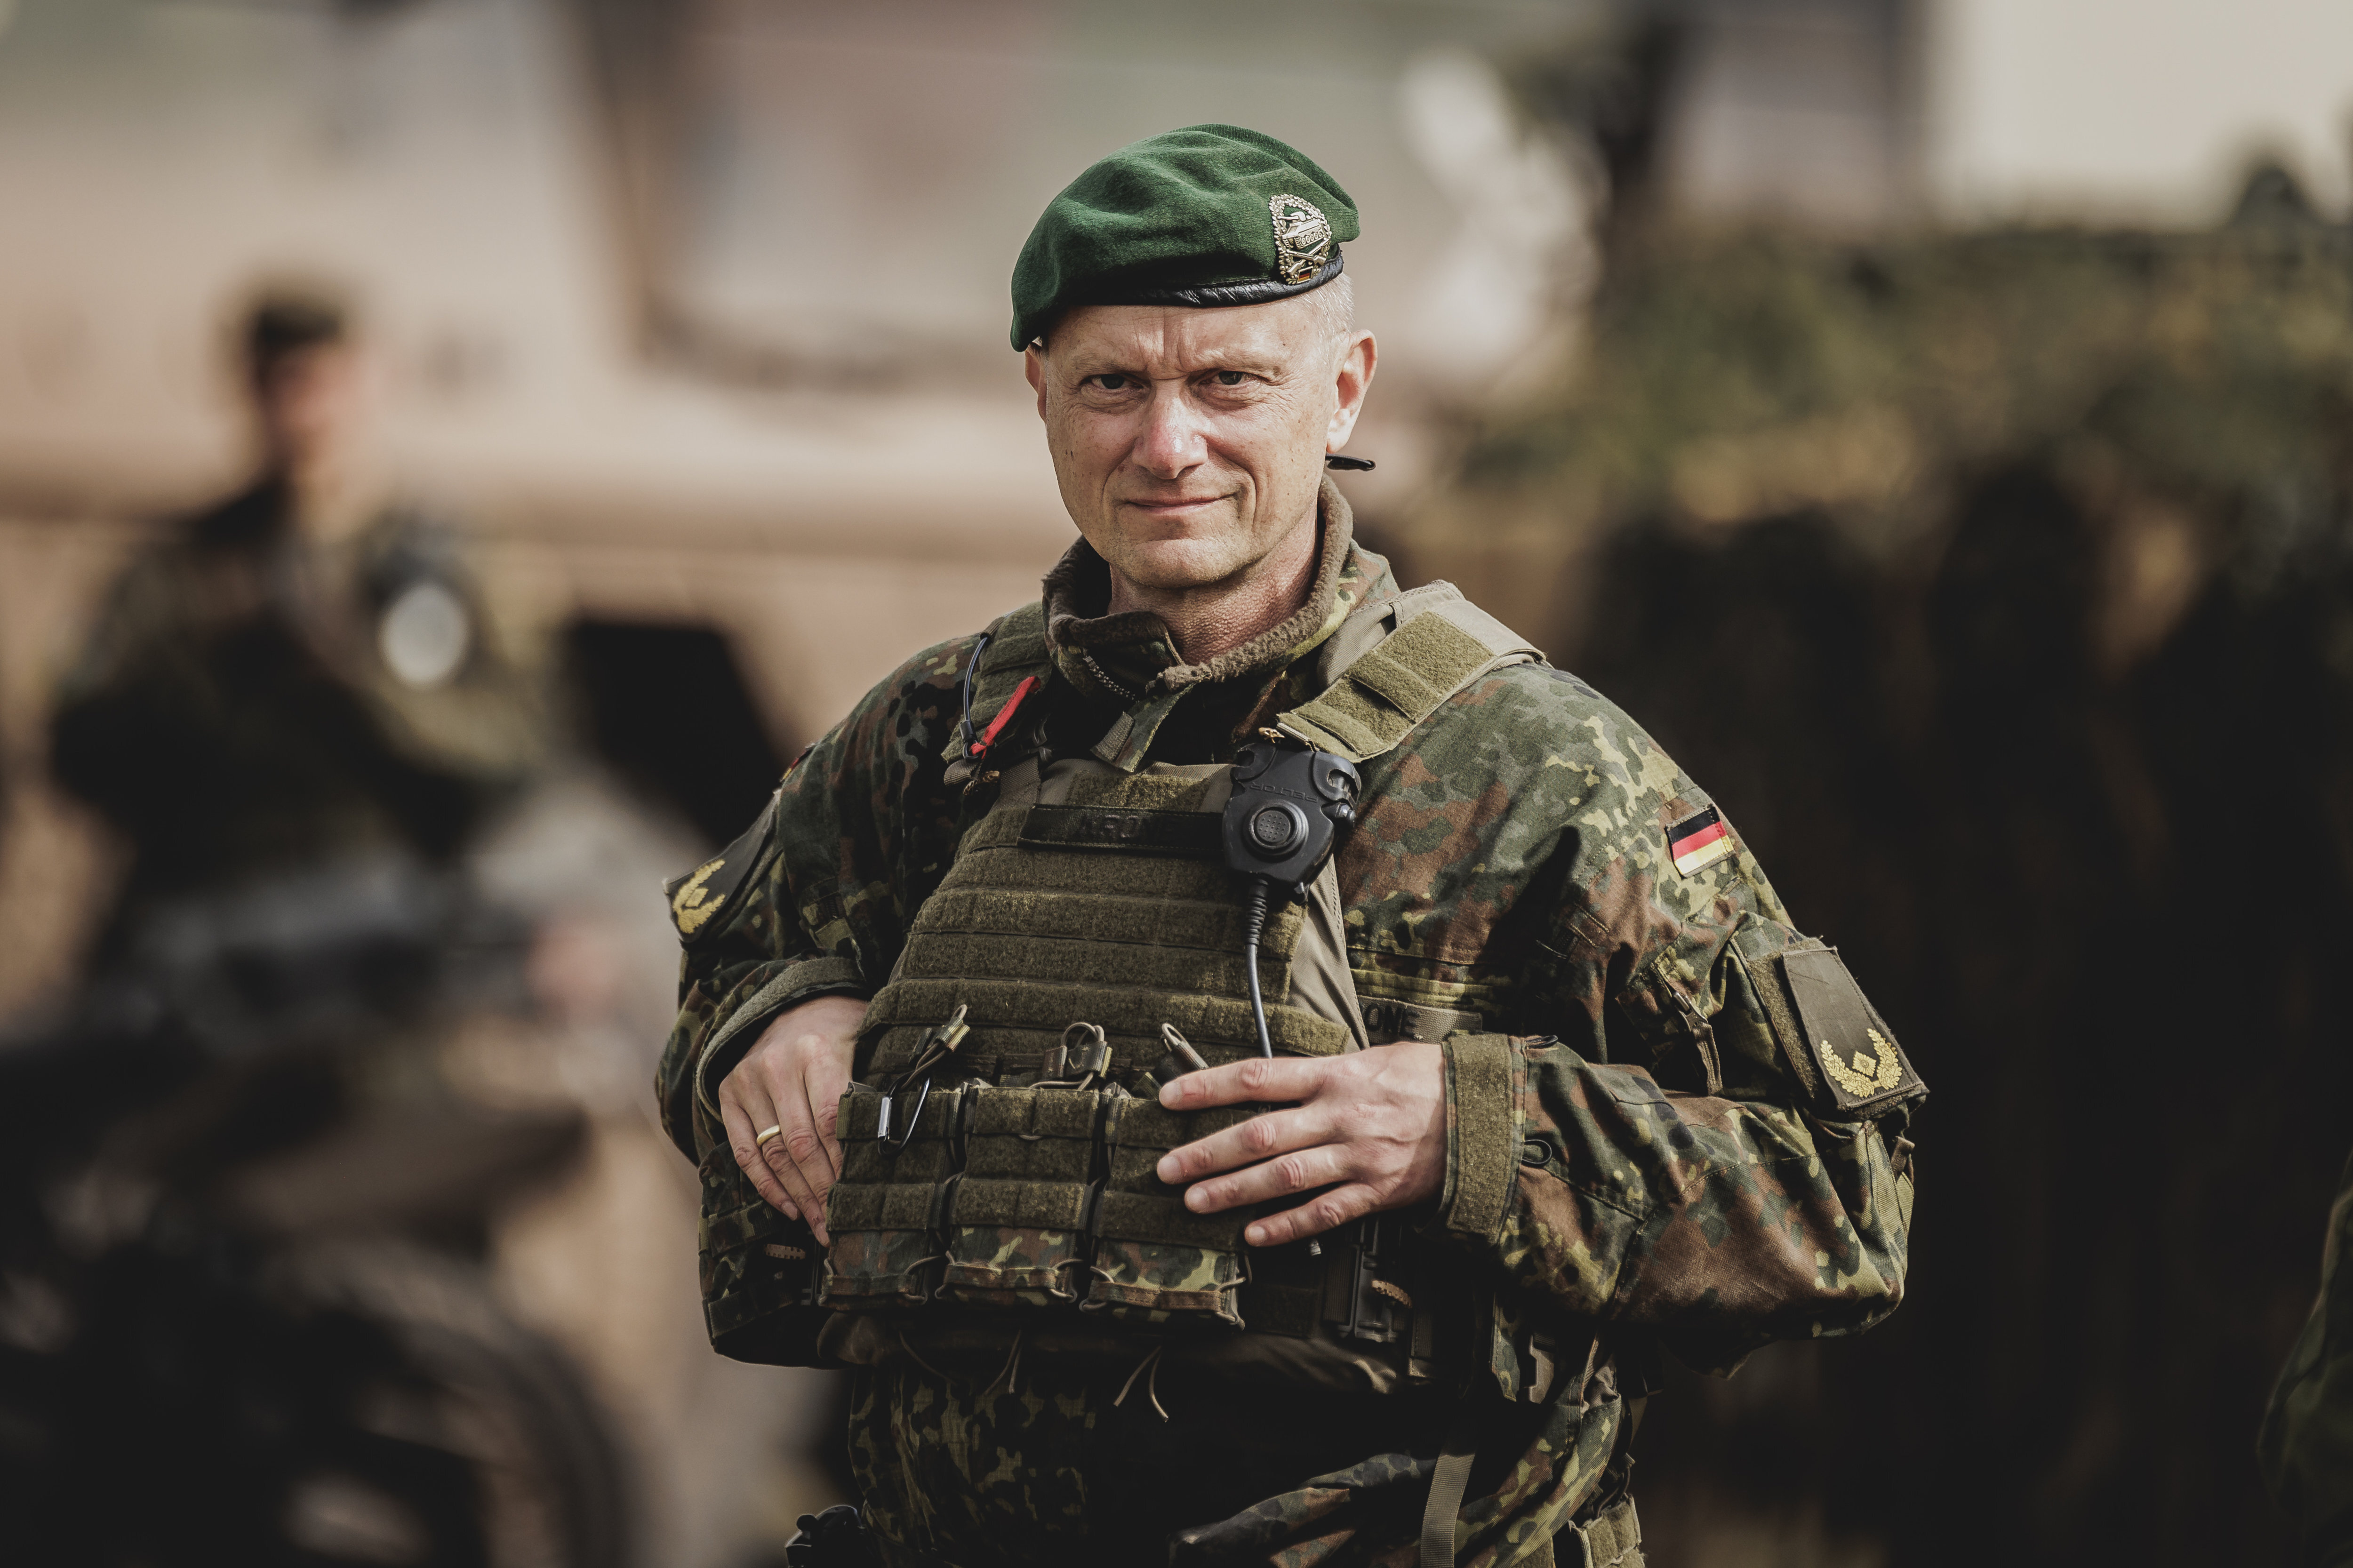 Brigadegeneral Alexander Krone übernimmt die Spitze des Kommandos Spezialkräfte. Foto: picture alliance/photothek.de/Florian Gaertner